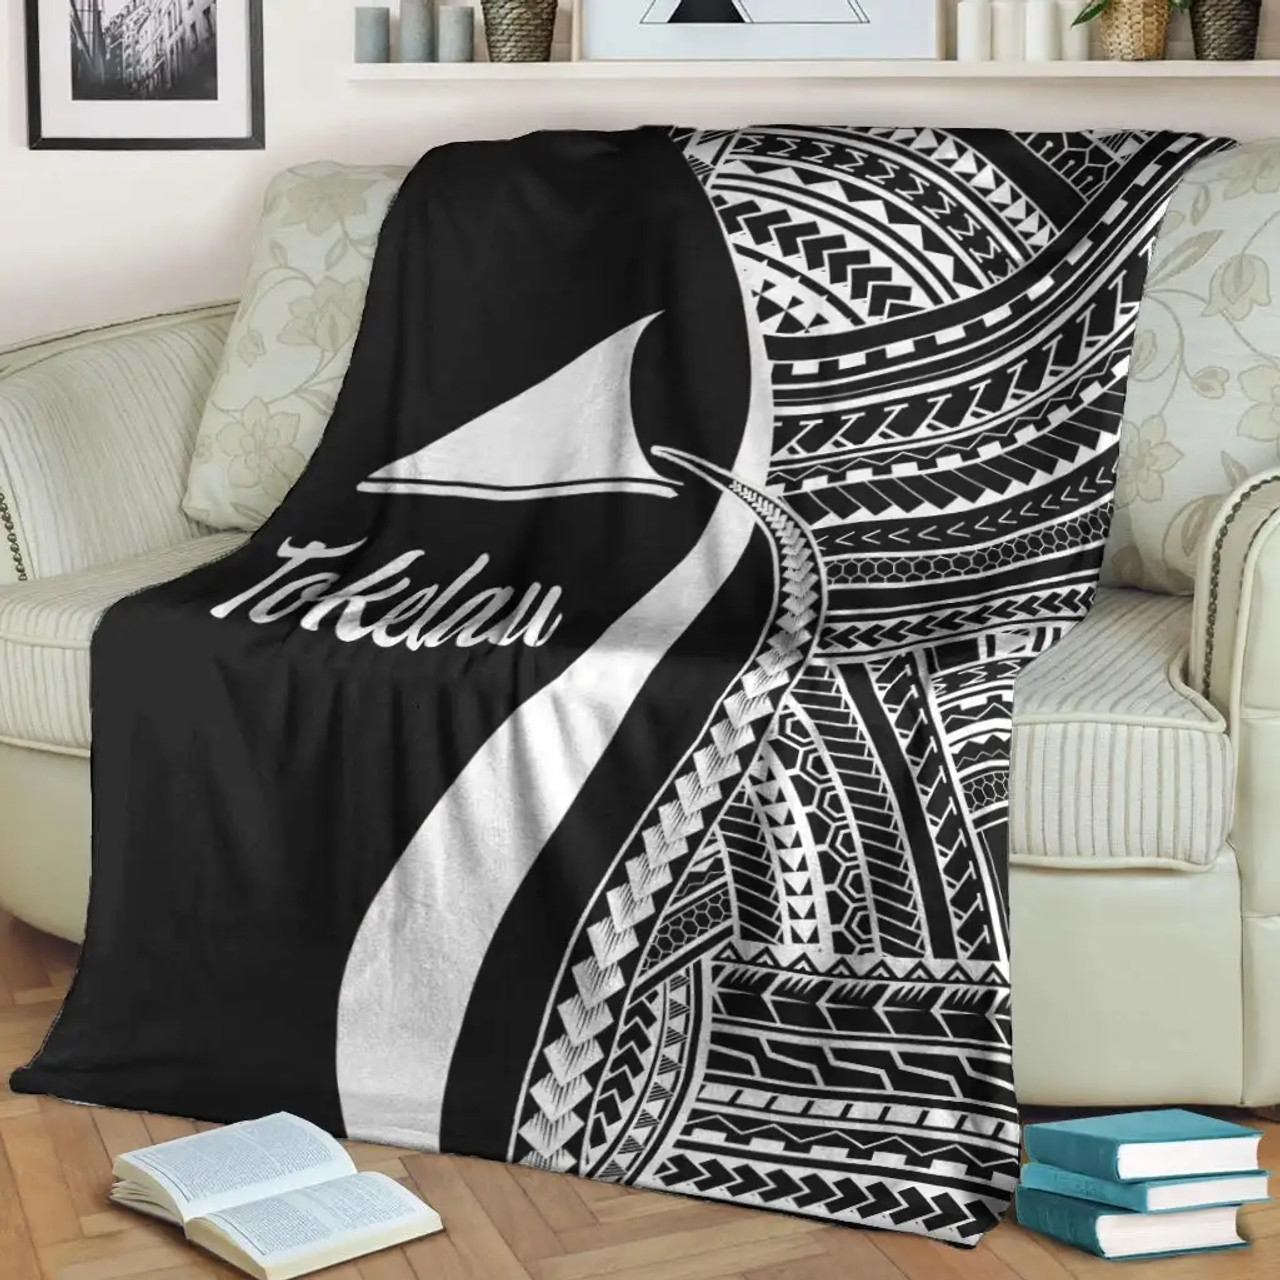 Tokelau Premium Blanket - White Polynesian Tentacle Tribal Pattern 3